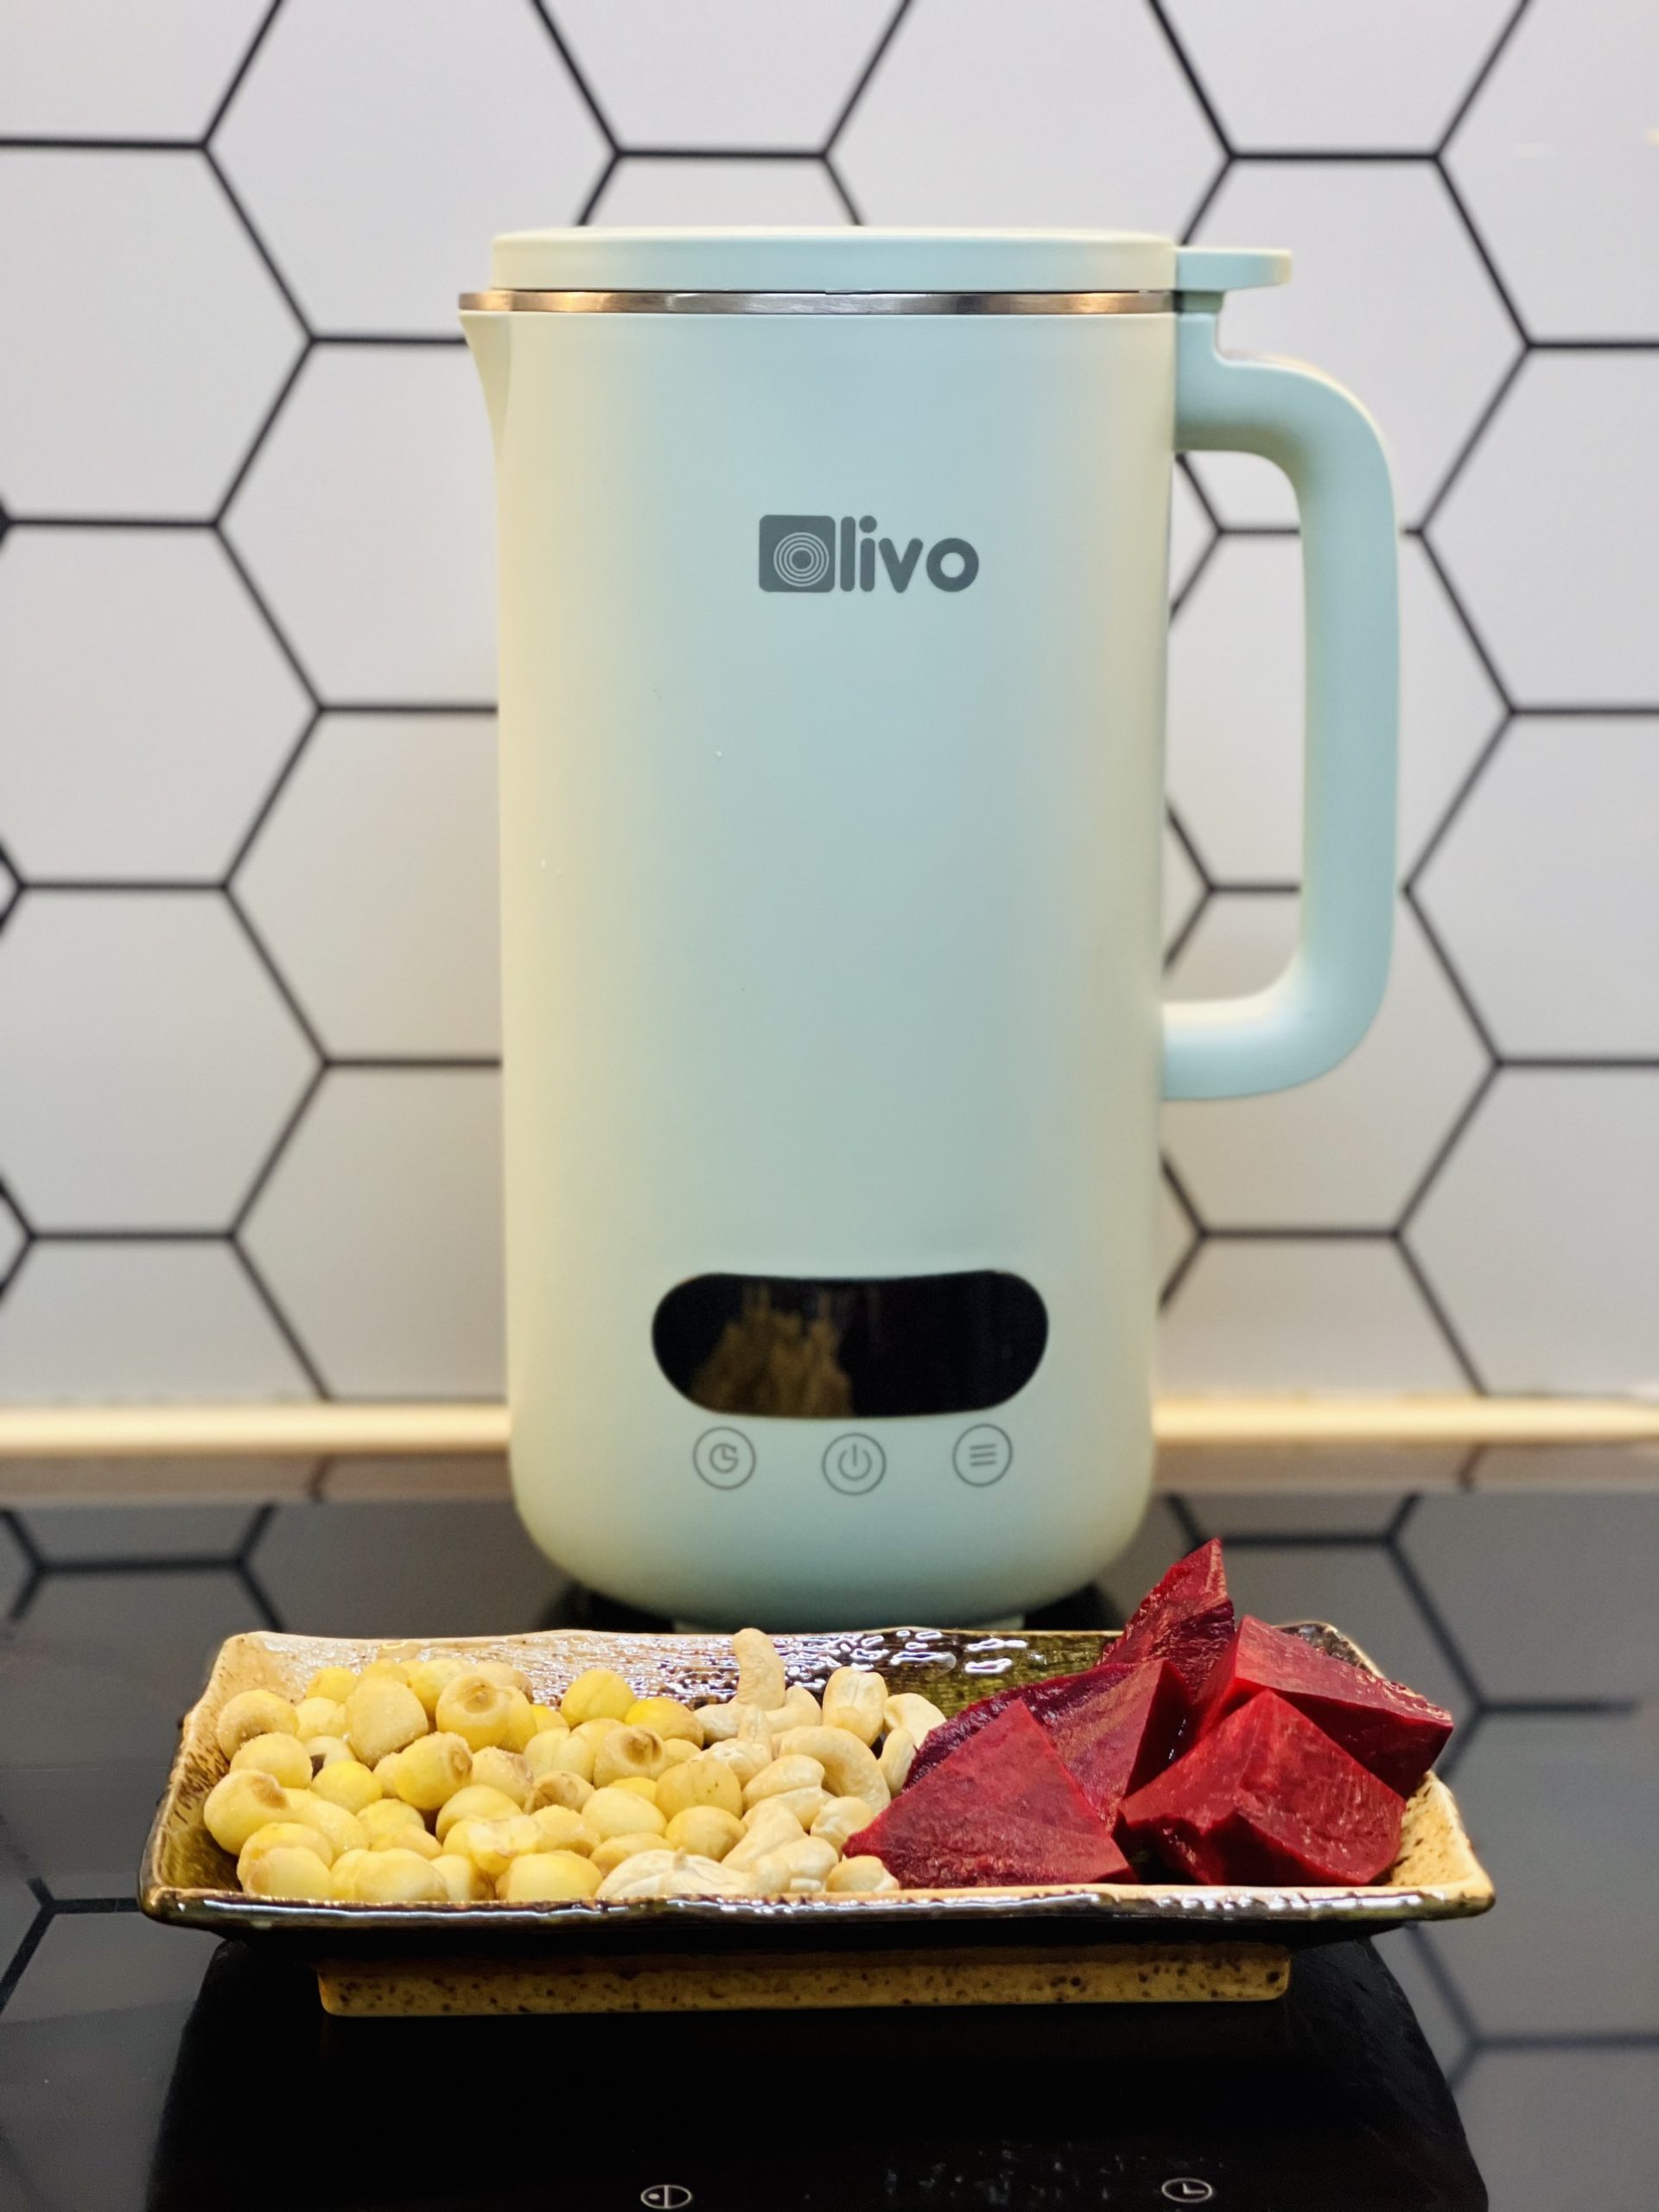 Máy xay nấu đa năng OLIVO CB1000 không chỉ giới hạn ở chức năng nấu sữa hạt